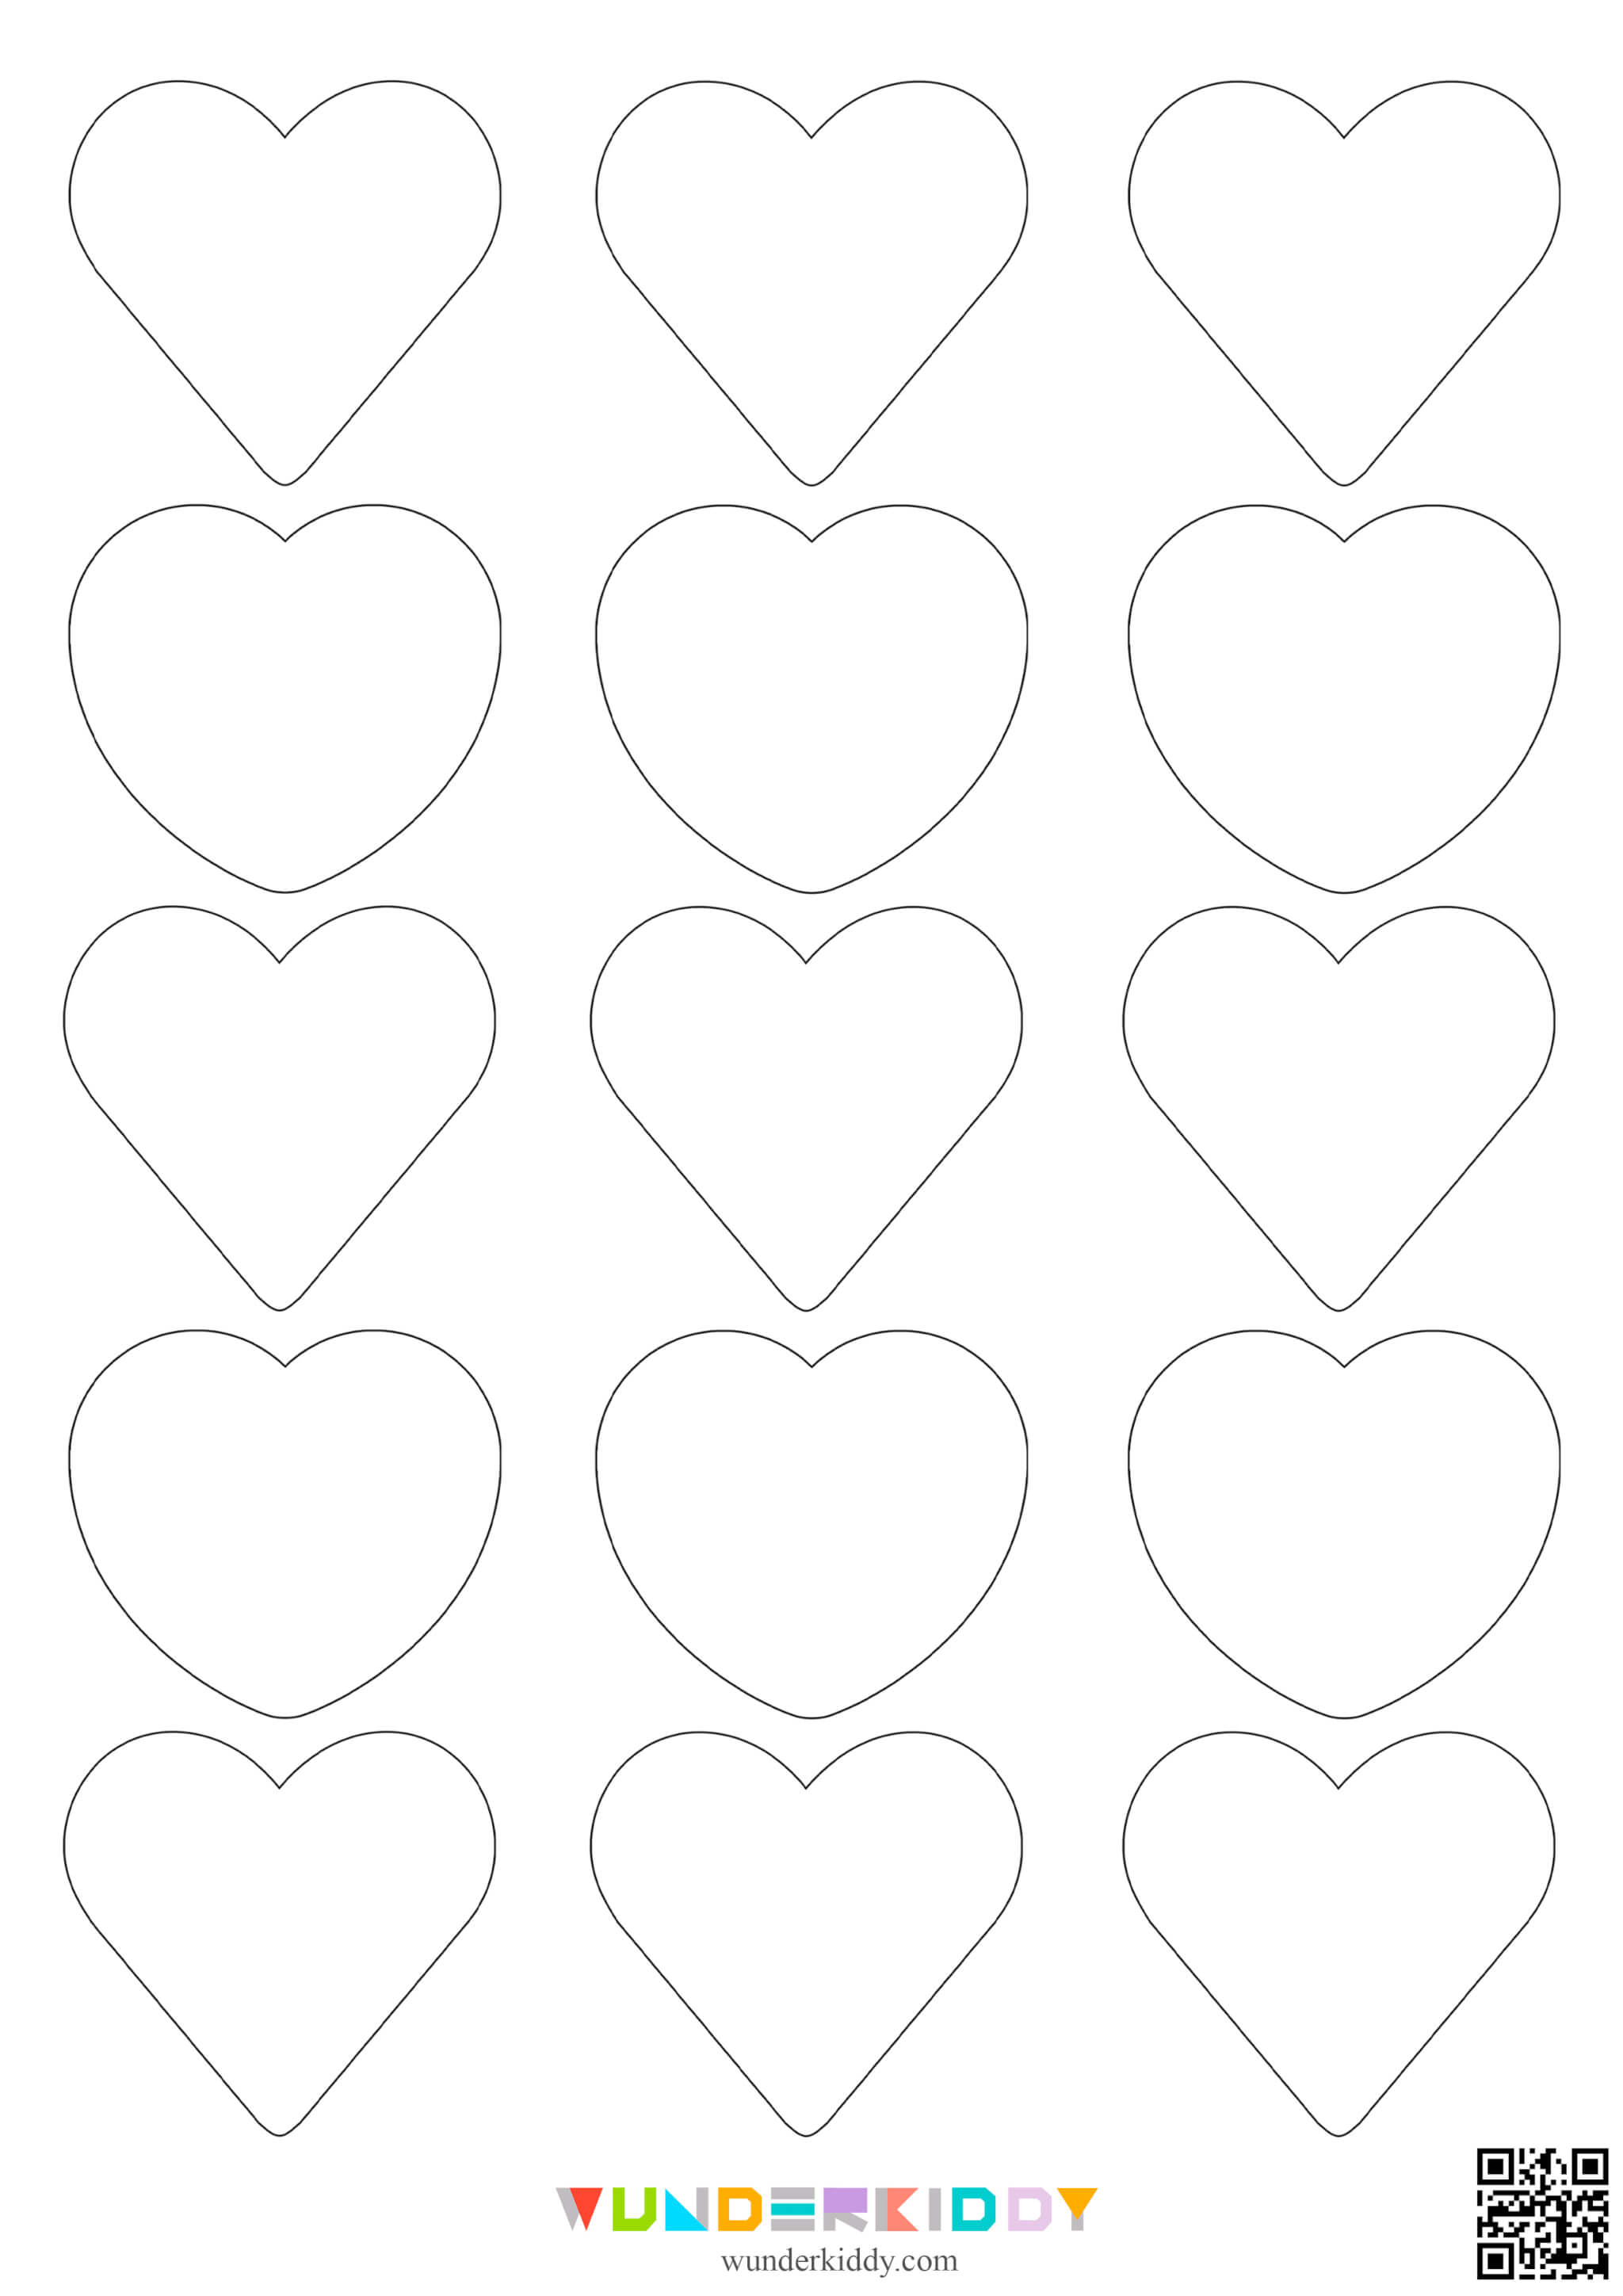 Контури та шаблони «Сердечка» для вирізання - Зображення 4